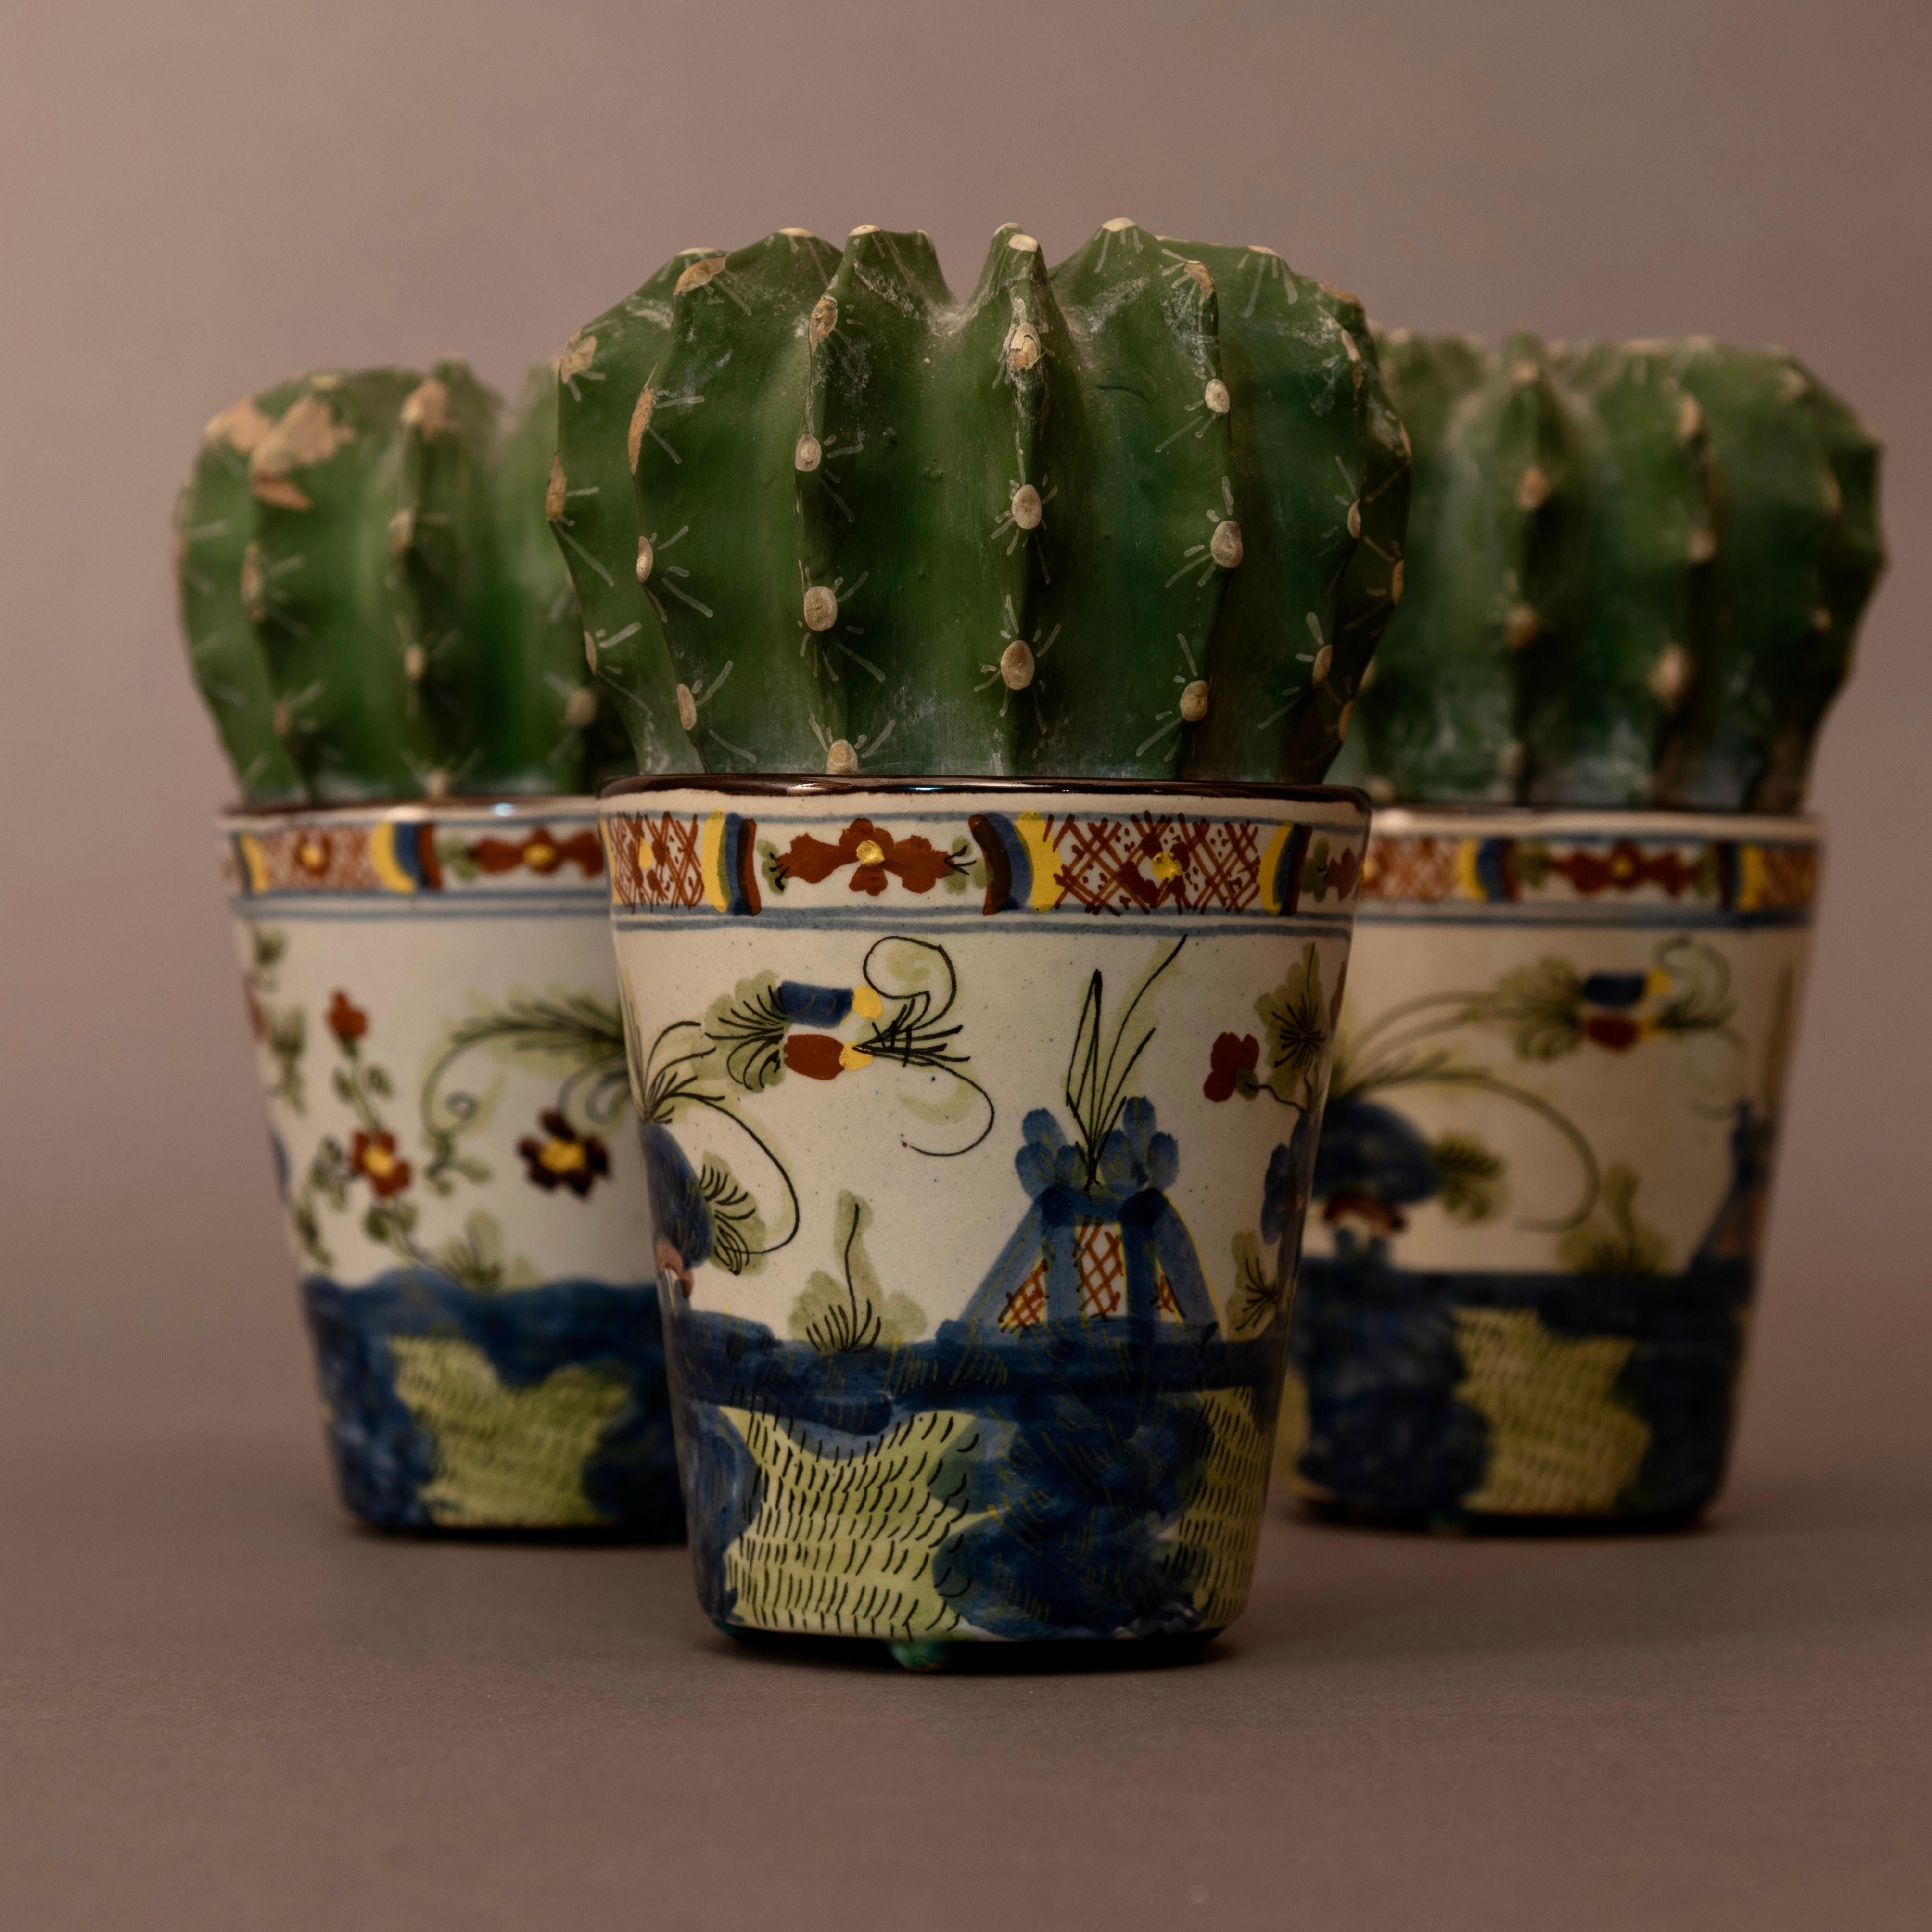 Schöner Satz Faenza-Keramik aus den 1950er Jahren.
Sie stellen ein ebenso originelles wie interessantes Thema dar: Kaktuspflanzen in einer Keramikvase!
Diese kleinen Meisterwerke sind das Werk einer bedeutenden italienischen Keramikfabrik: 